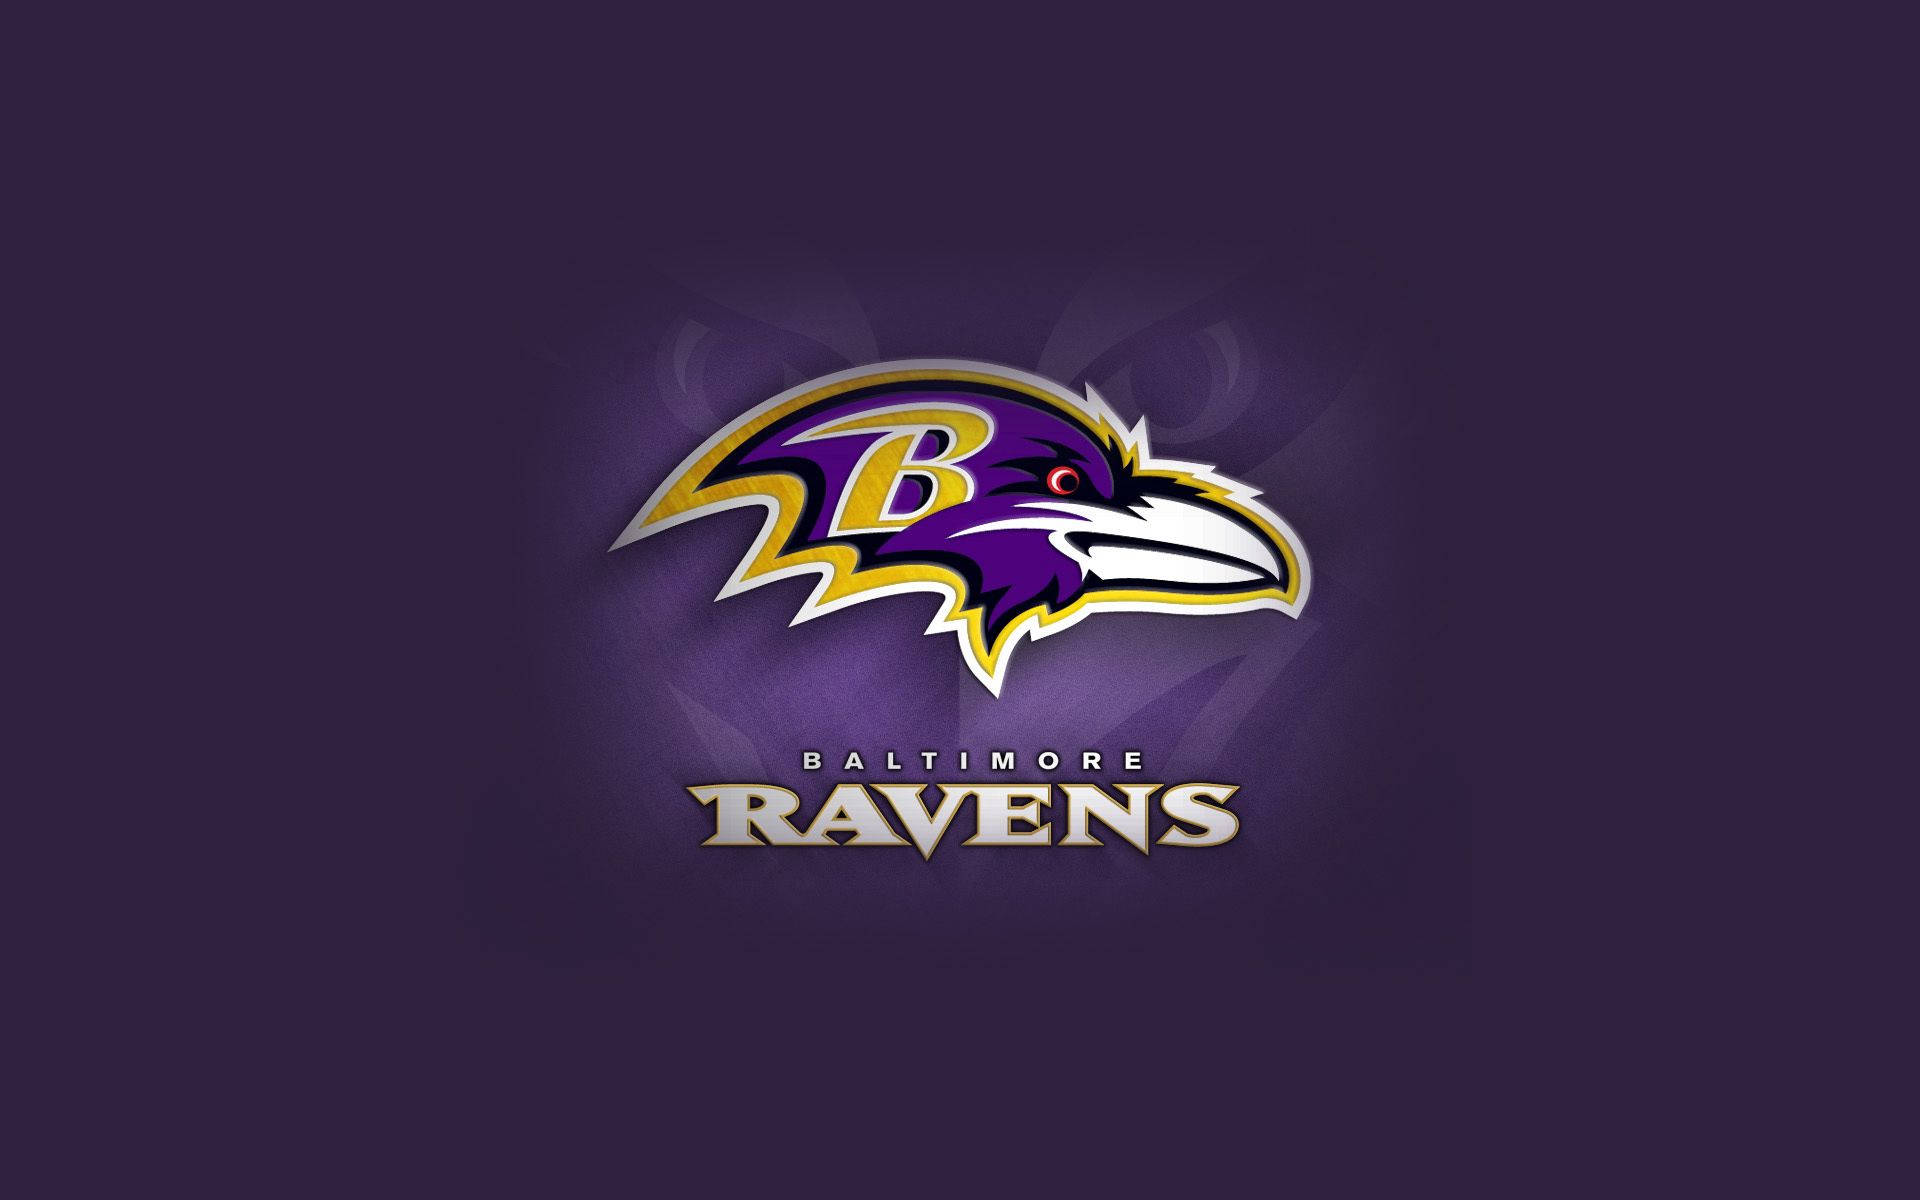 Immagini Dei Baltimora Ravens